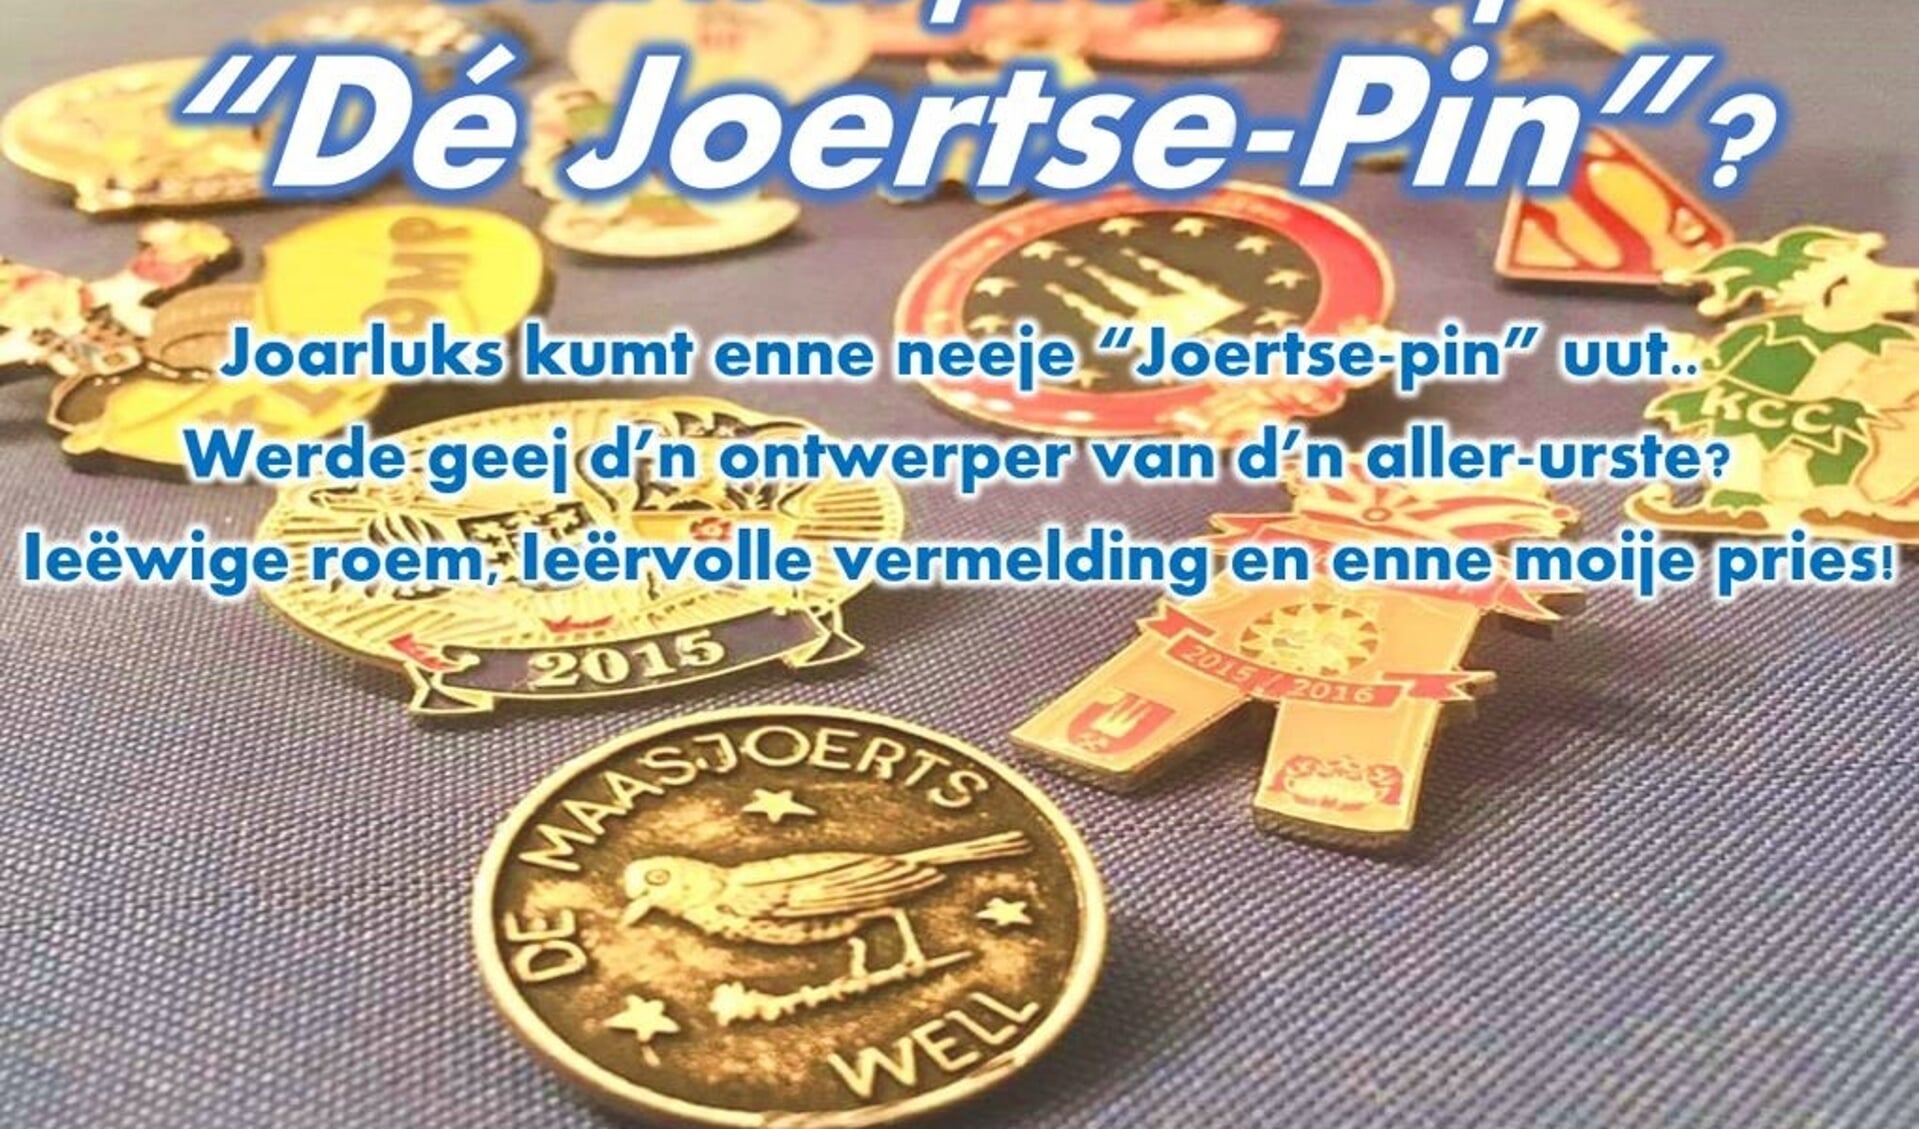 Het speldje van de Maasjoerts heet De Joertse-Pin